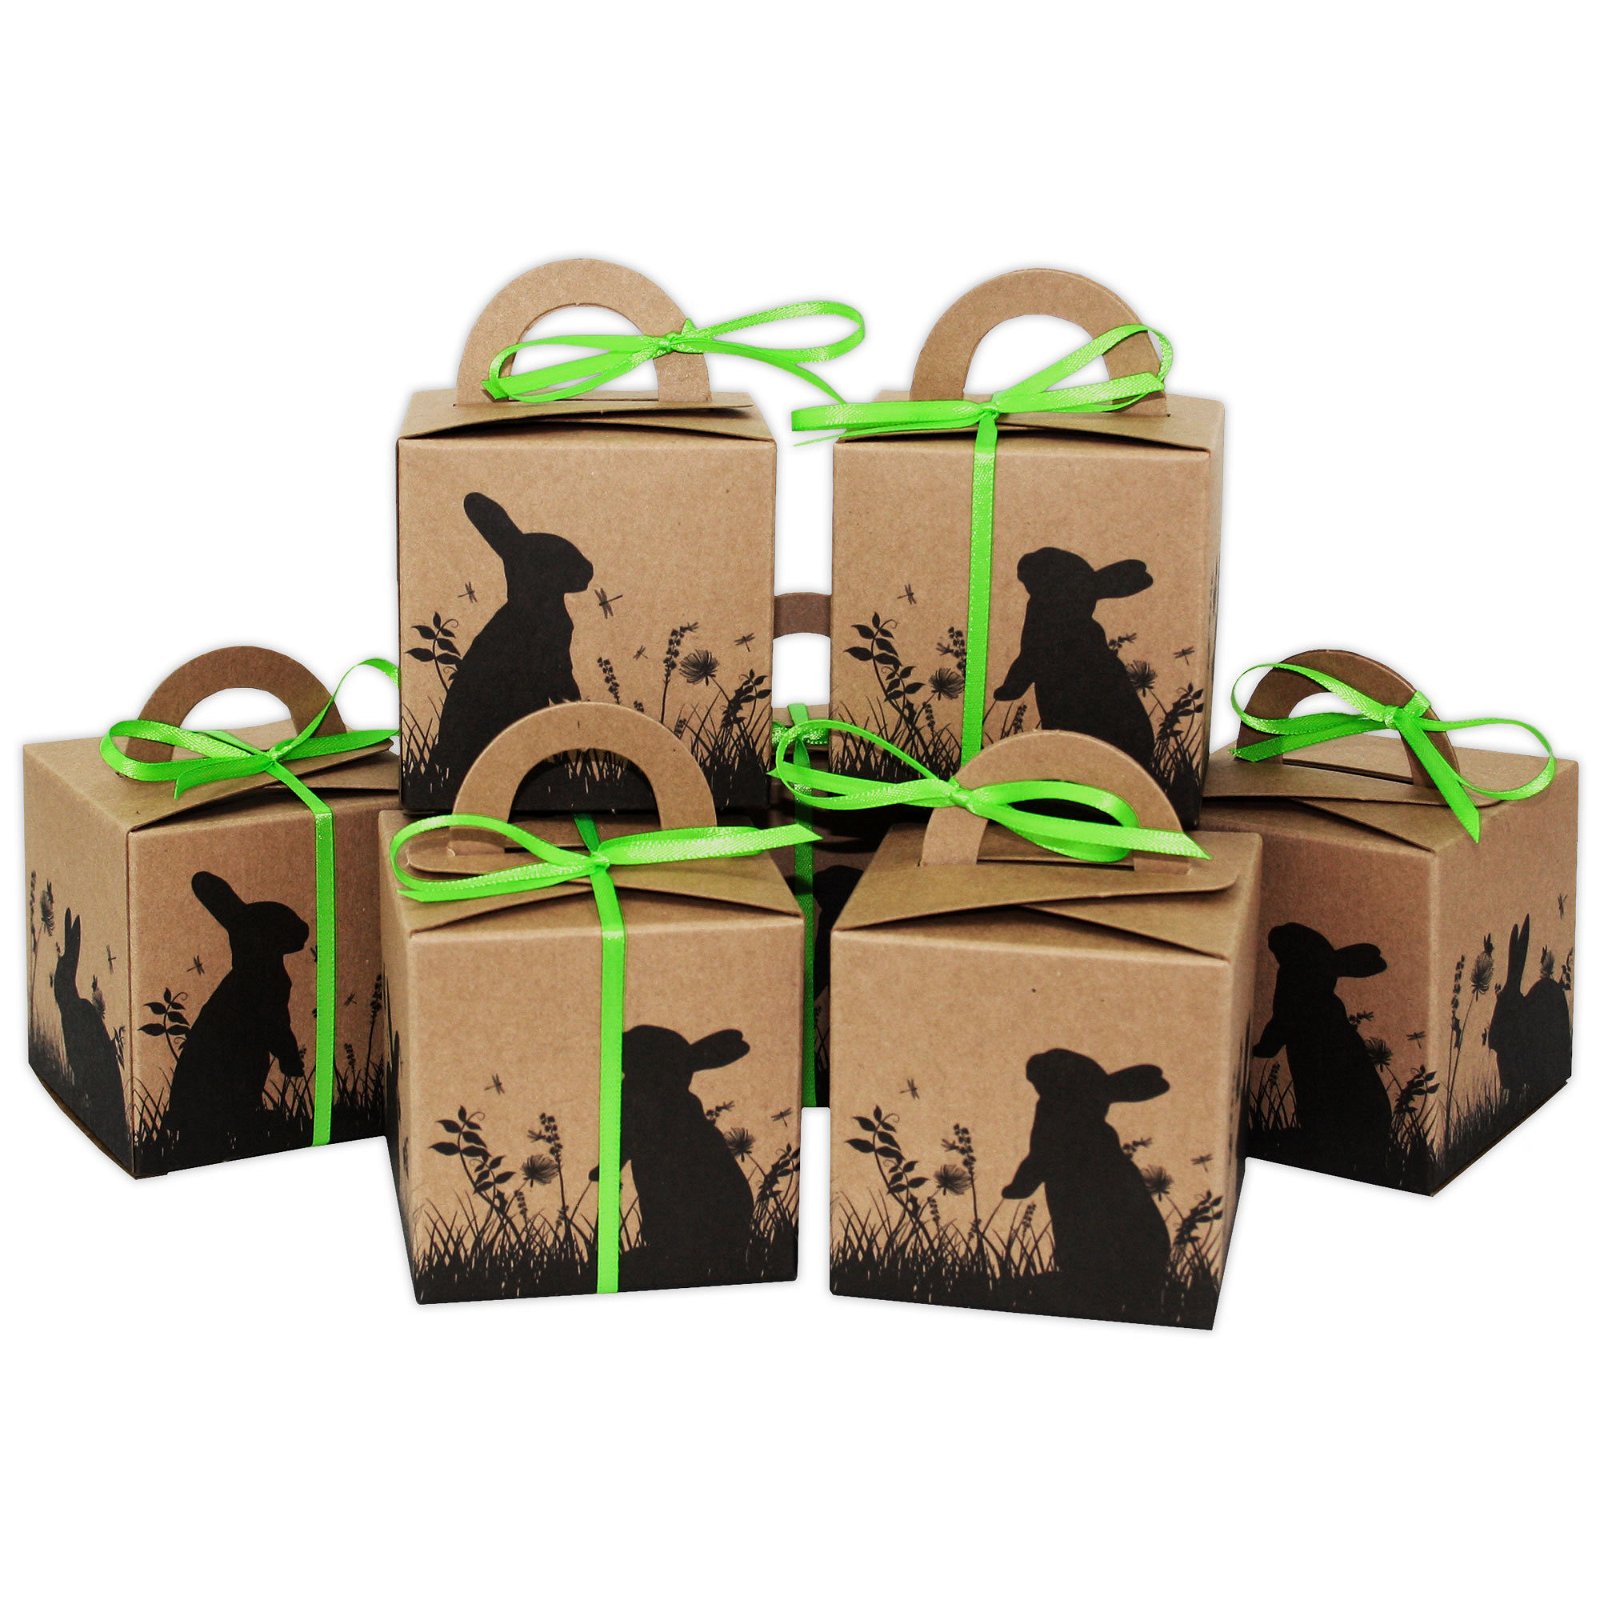 Geschenkverpackung zum Befüllen Papierdrachen DIY Osterhasen Kisten mit Washi Tape Geschenkboxen zu Ostern für Kinder und Erwachsene Dekoration